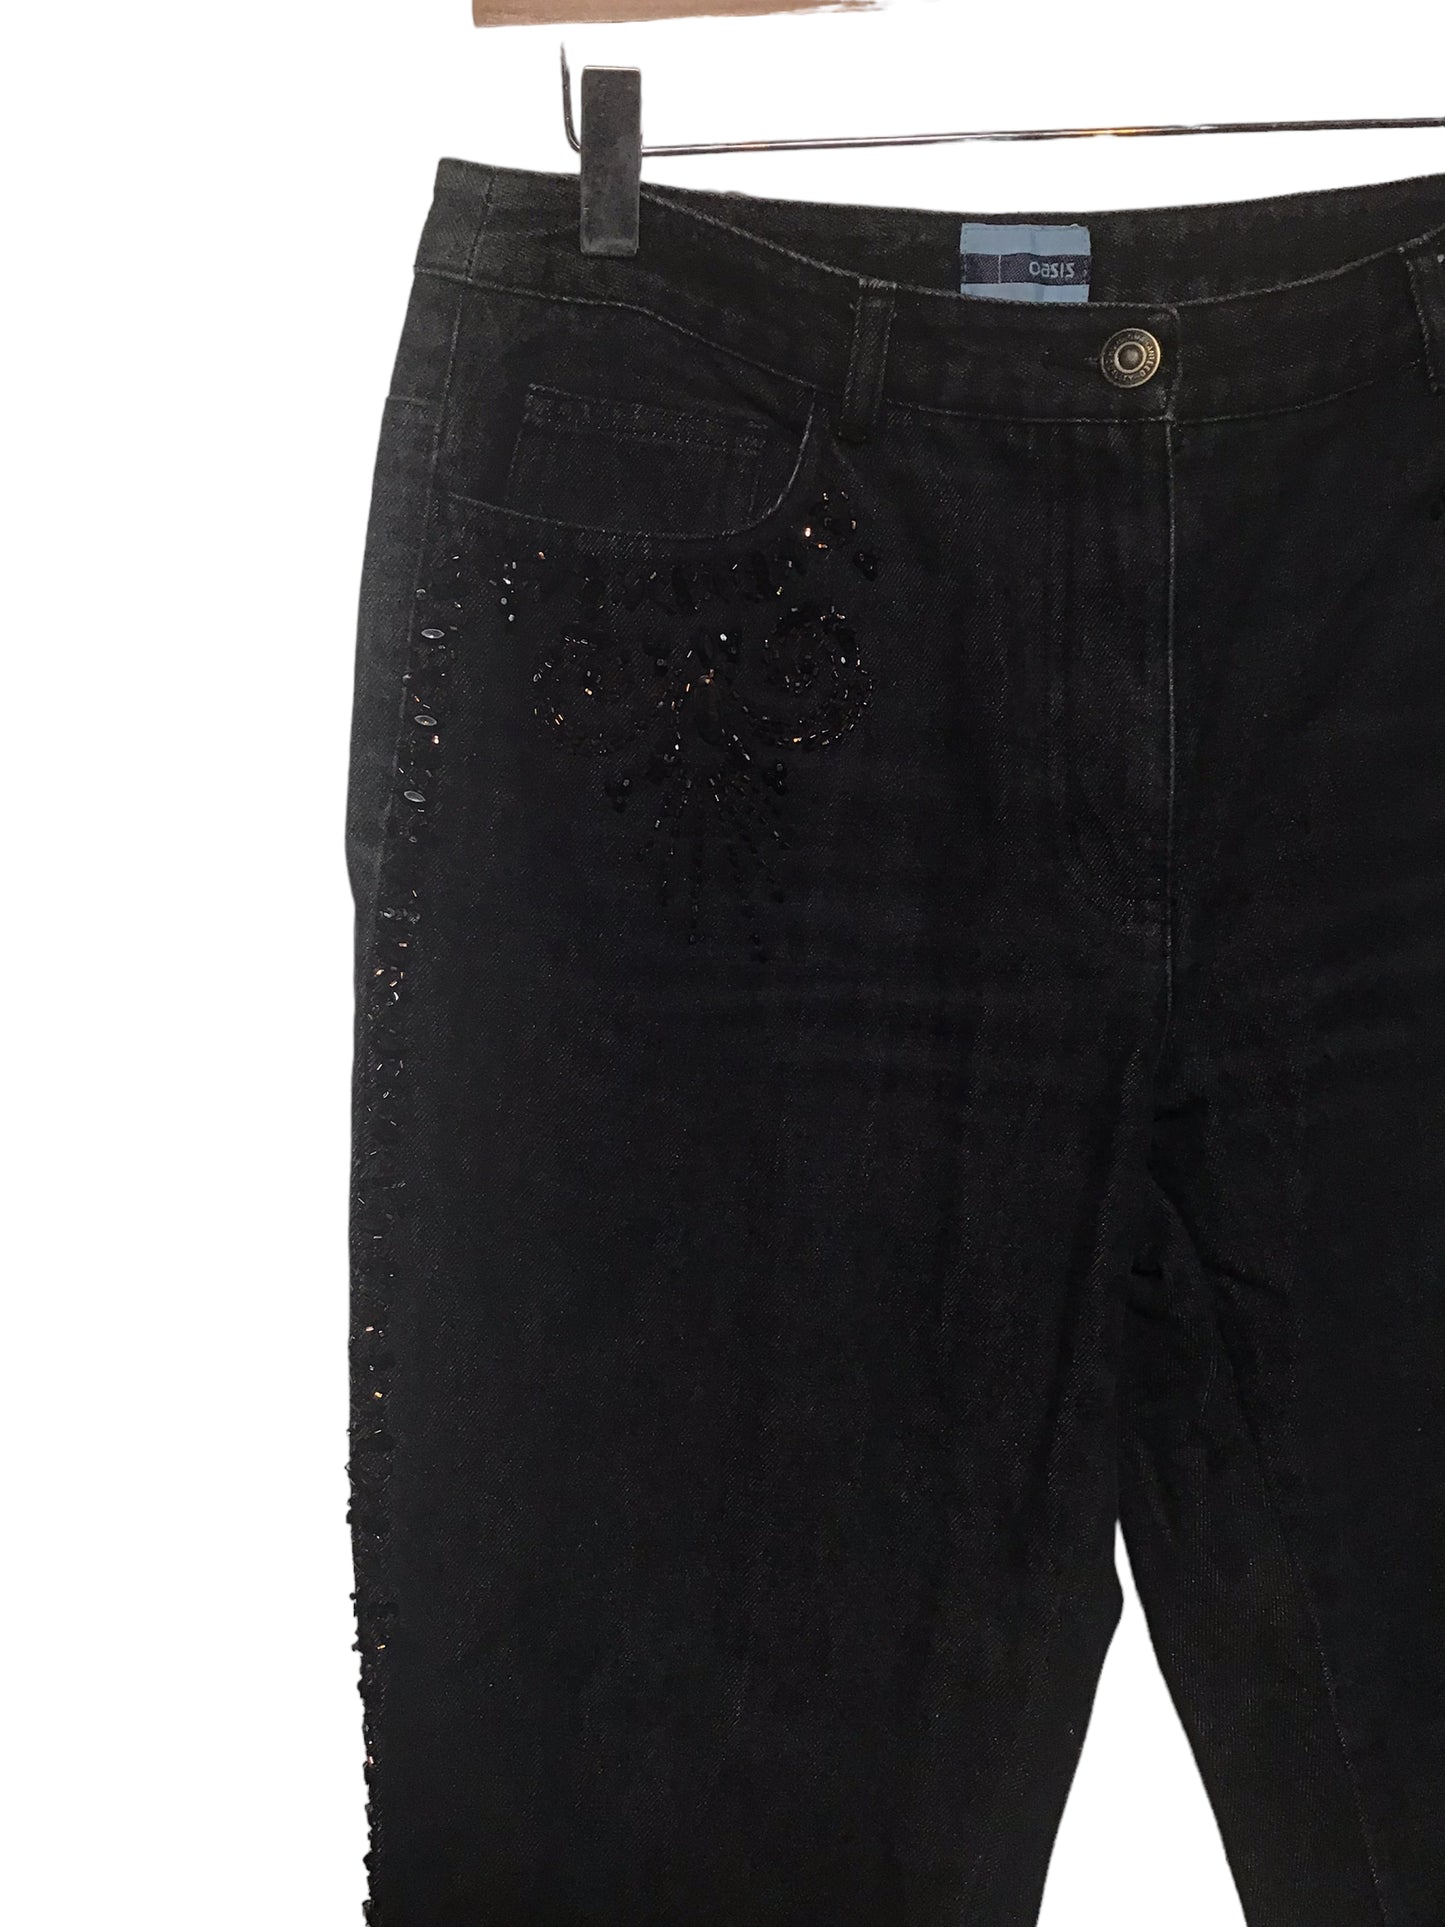 Black Lacoste Denim Jeans (Size 34x33)